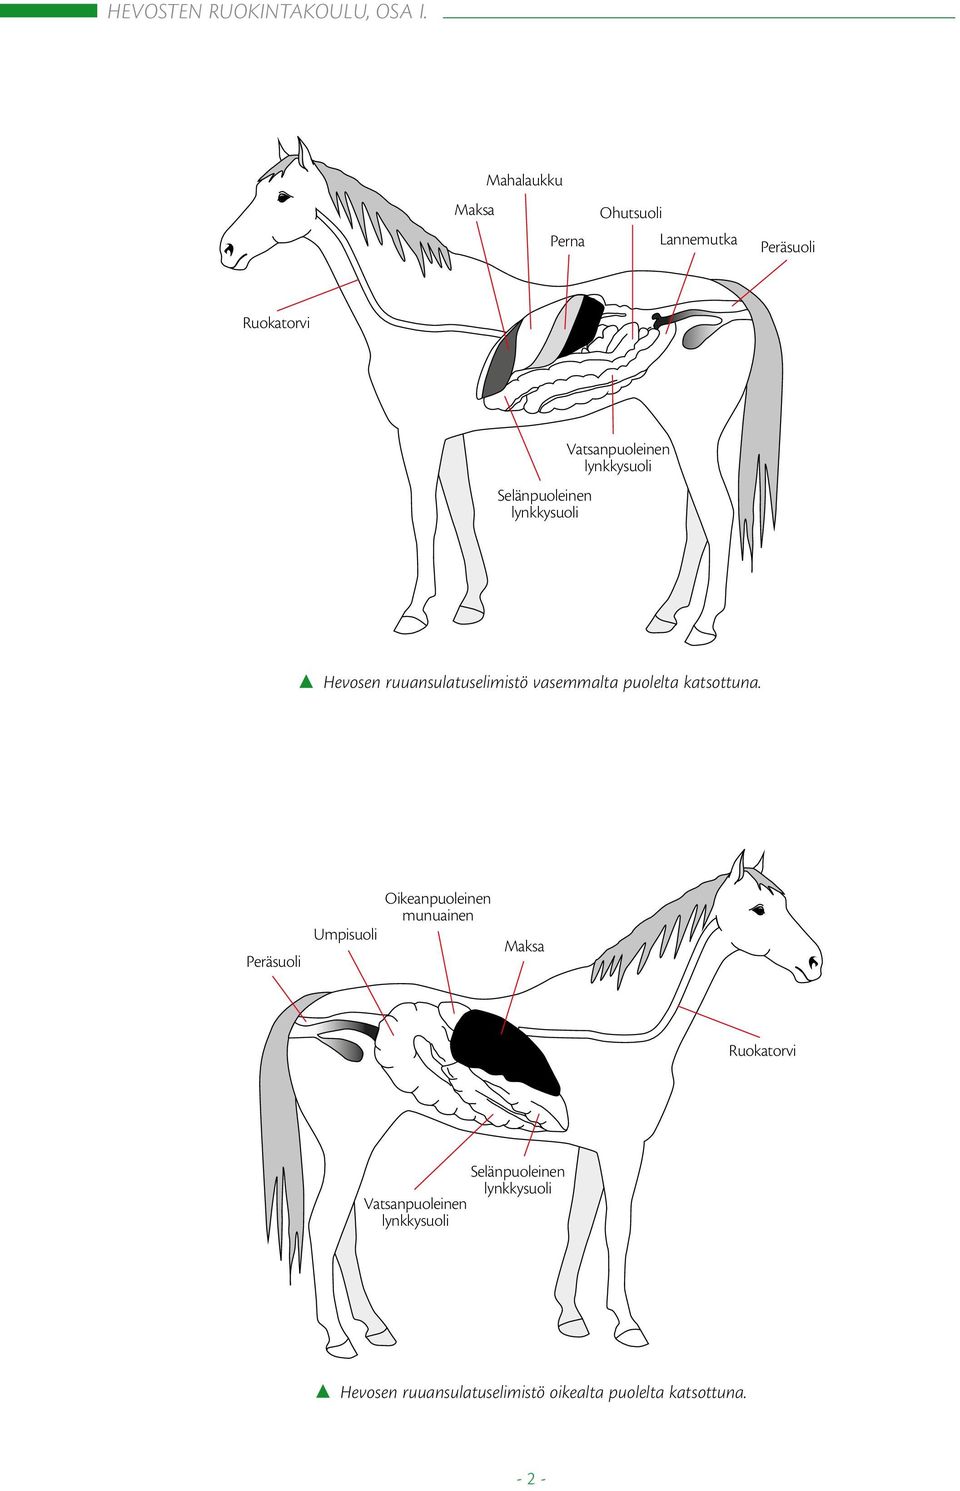 Vatsanpuoleinen Hevosen ruuansulatuselimistö vasemmalta puolelta katsottuna.